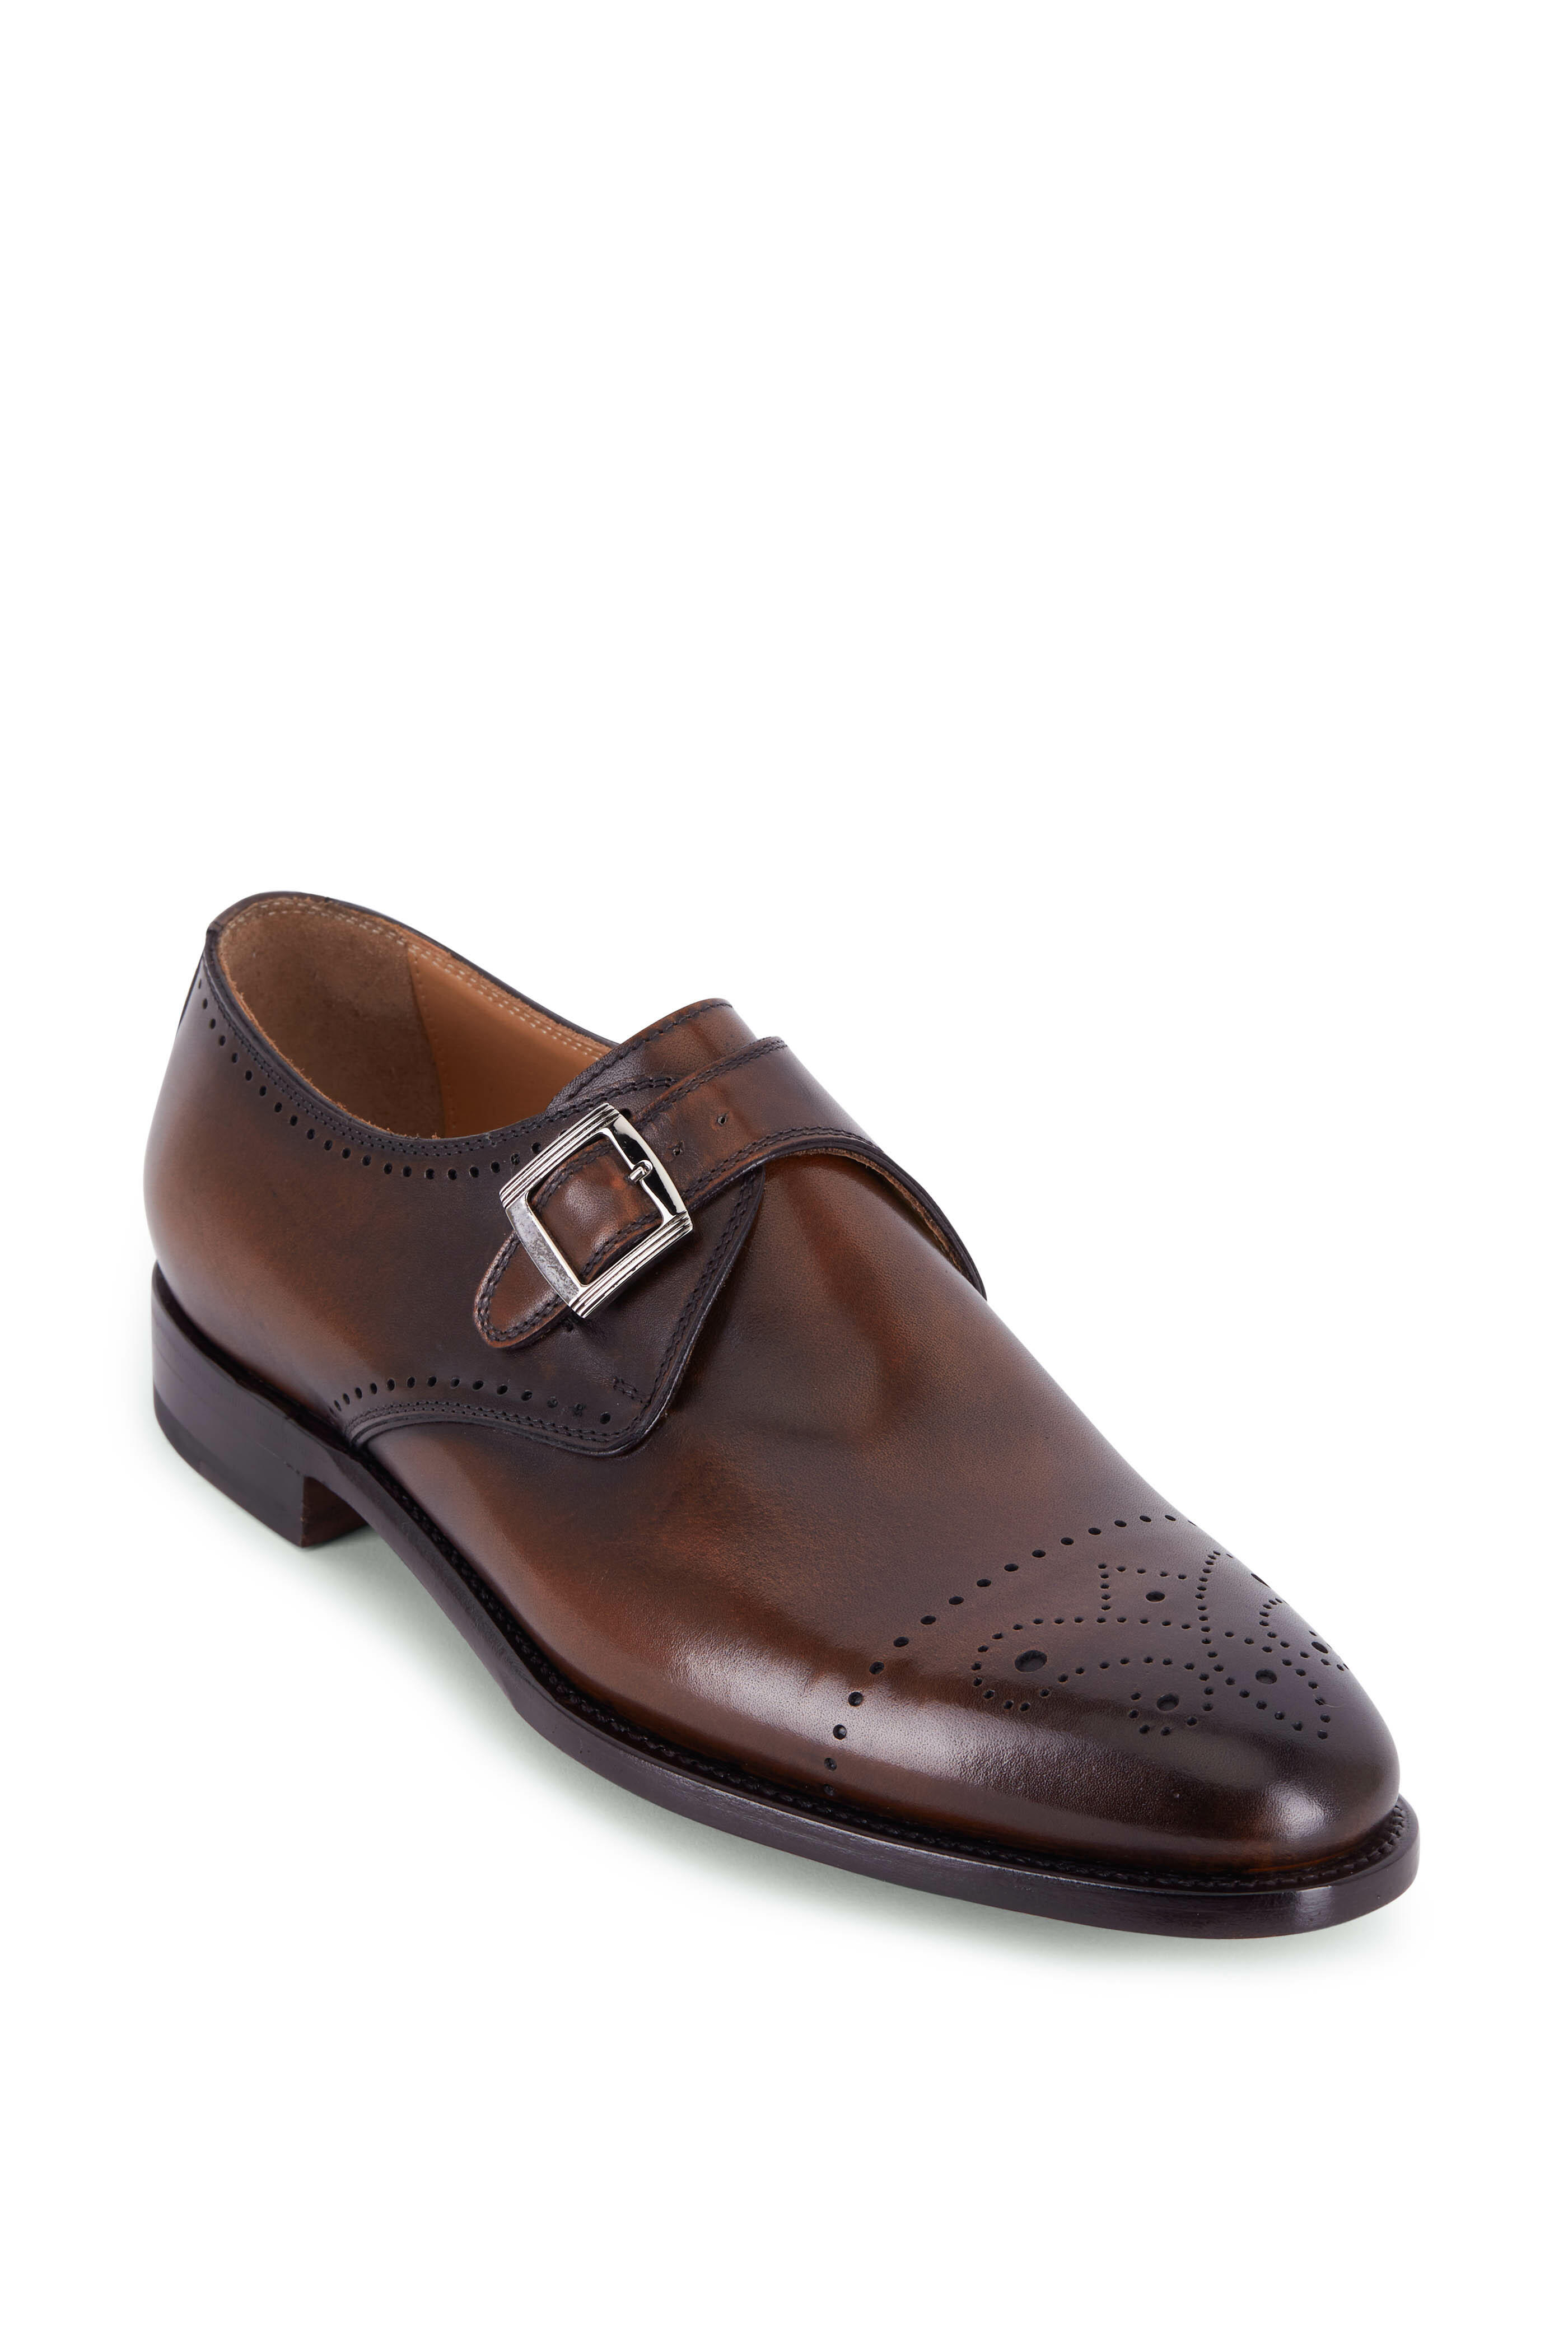 Kiton - Brown Leather Single Monk Strap Shoe